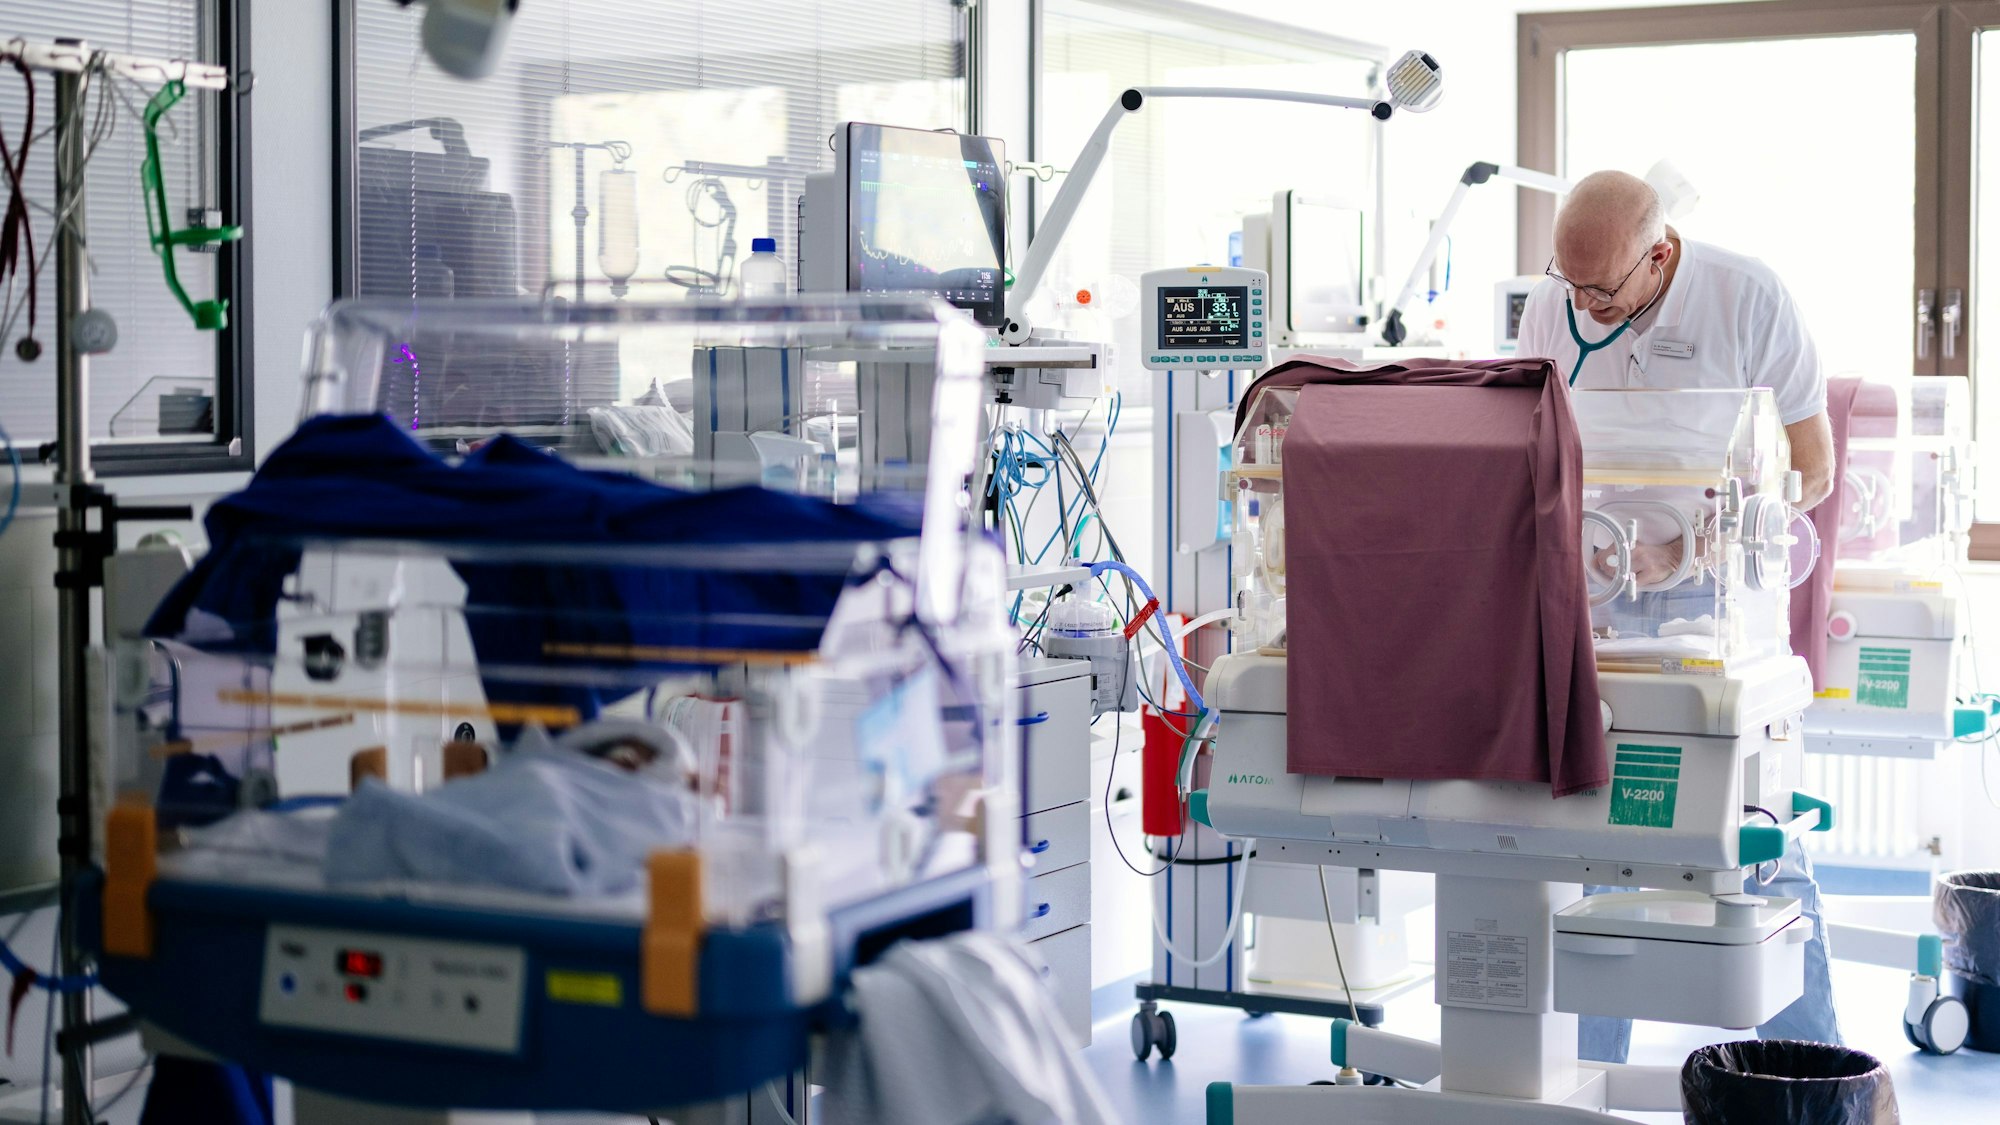 In den Brutkästen, den sogenannten Inkubatoren, herrscht dank darüber gelegter roten Tüchern dämmeriges Licht wie im Mutterleib. Ein Arzt untersucht ein Kind darin.